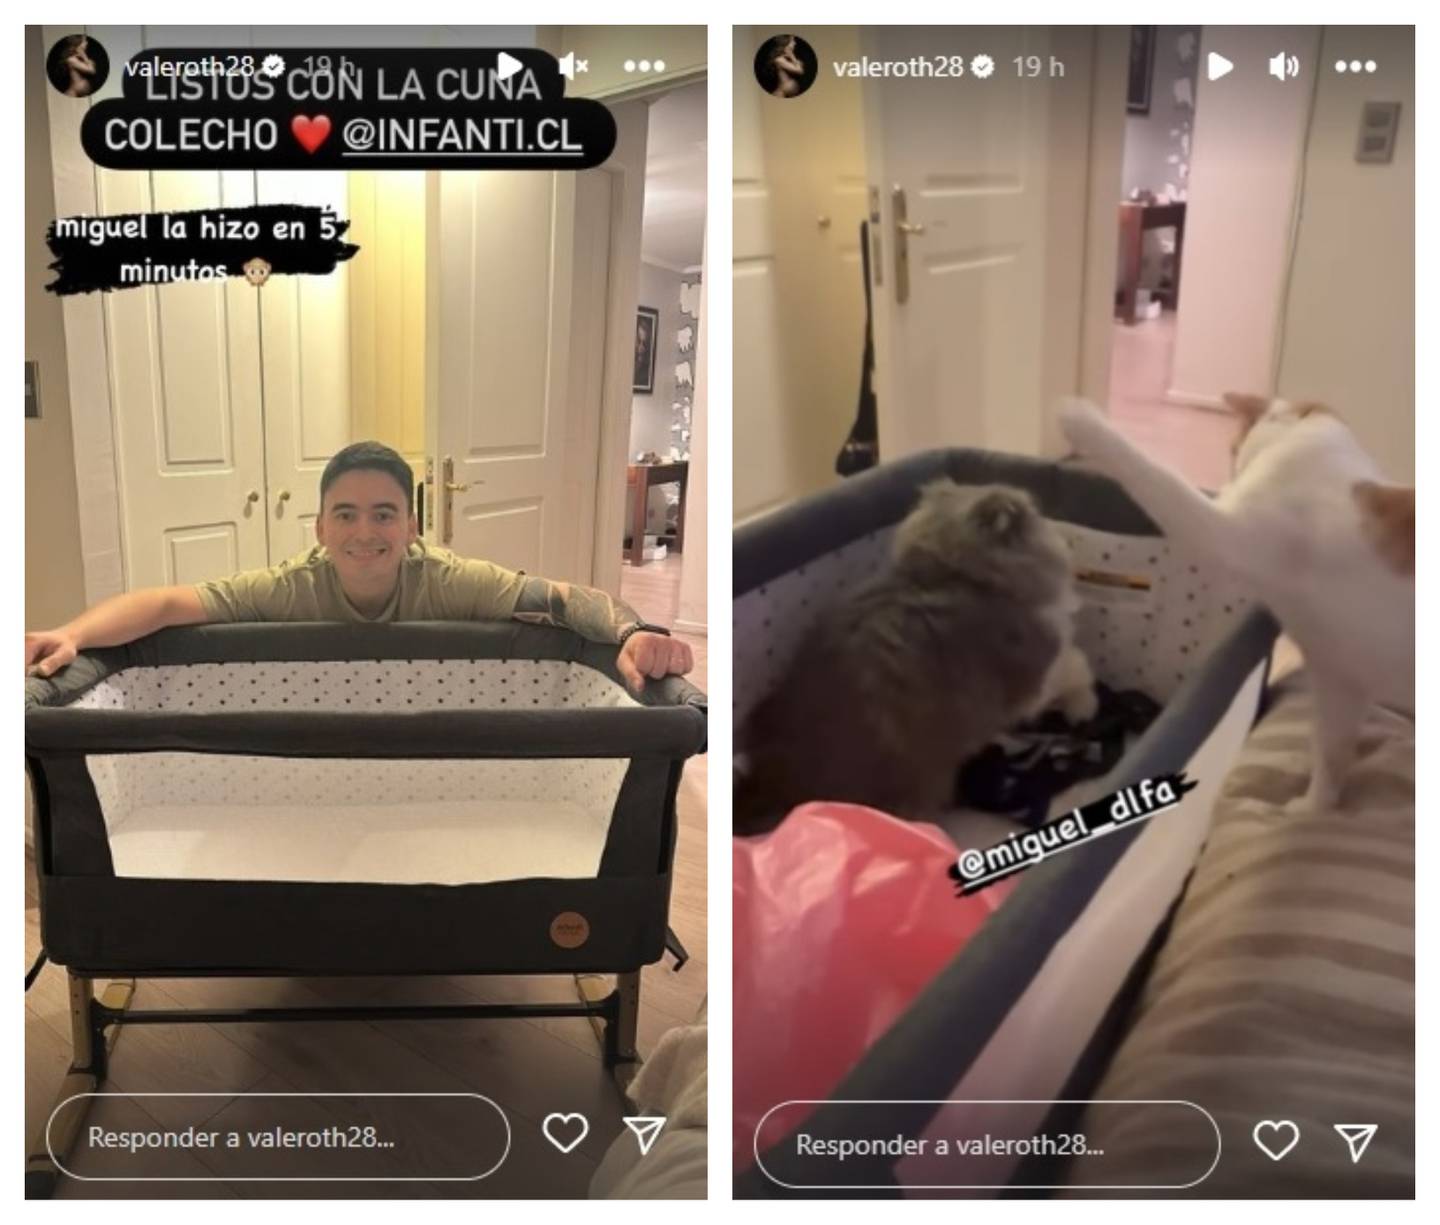 La mediática compartió en sus historias de Instagram los últimos detalles previos a su parto.